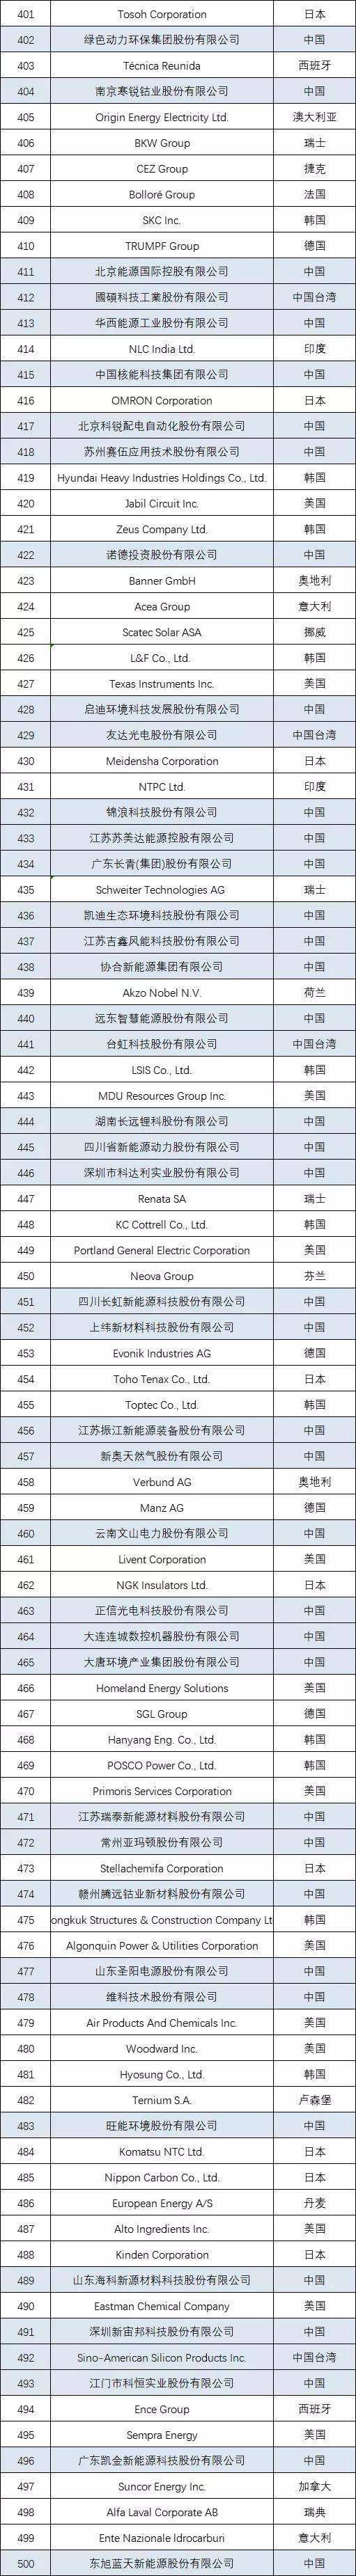 长城电源排行_2021年中国电气工业百强榜:阳光电源、大全、中国西电排名前三